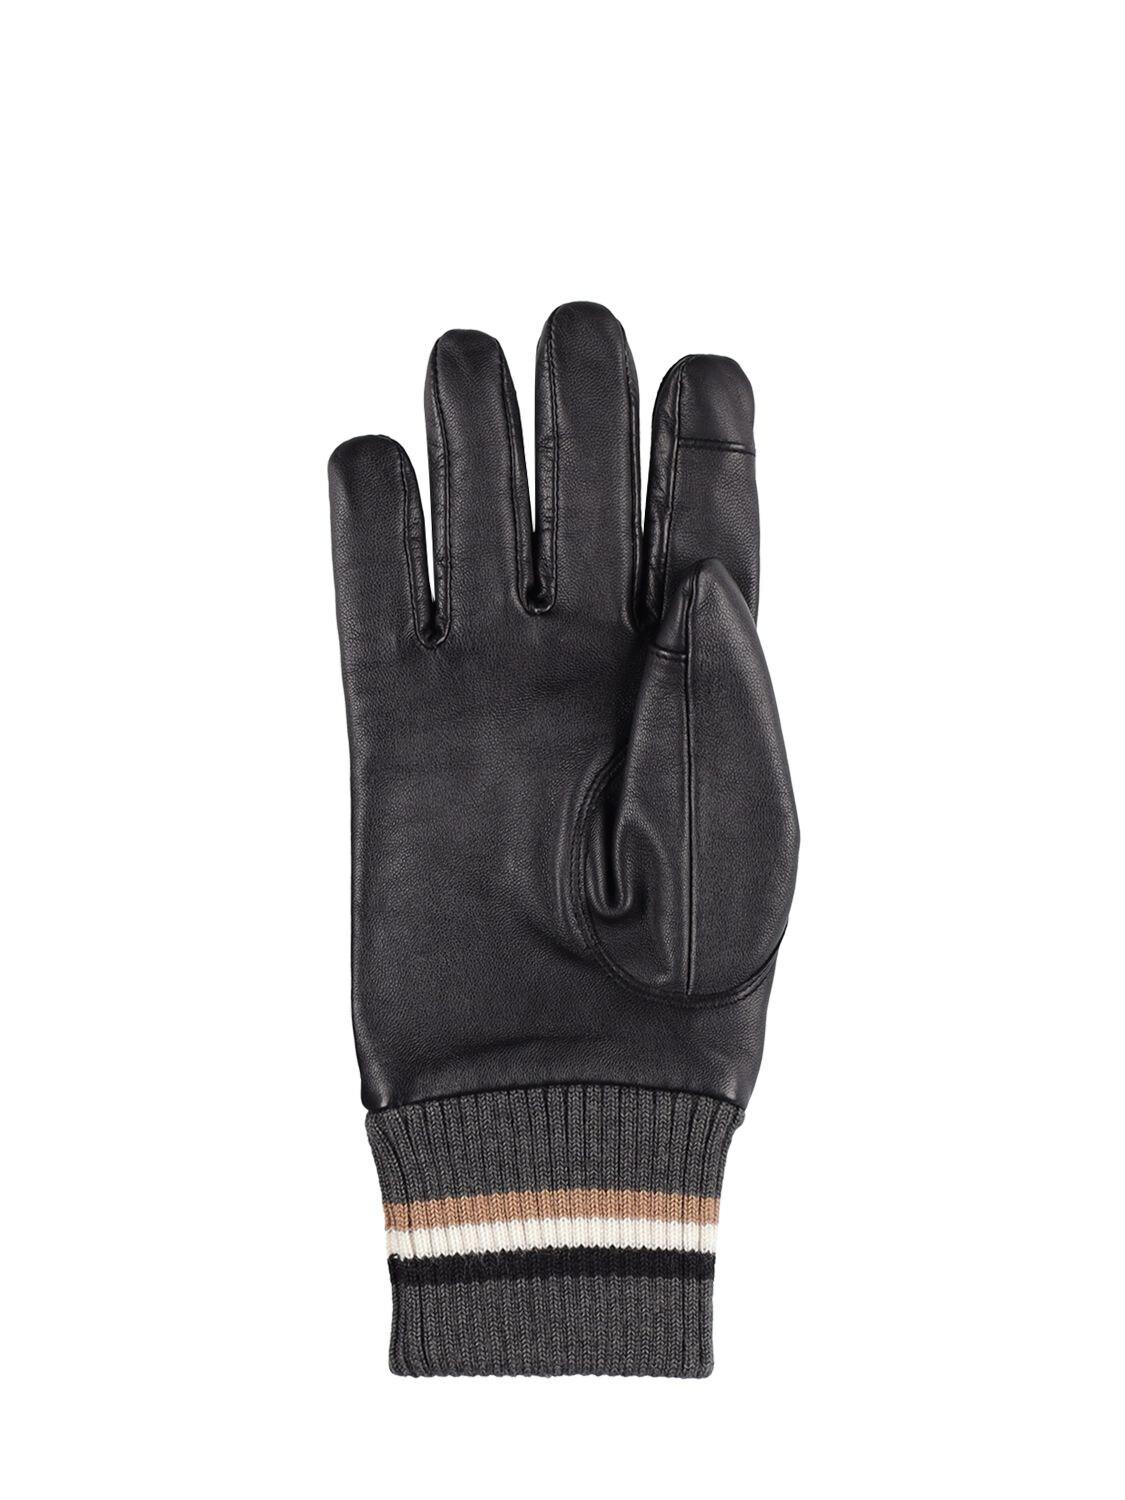 BOSS by HUGO BOSS Hayden Leather Gloves in Black for Men | Lyst